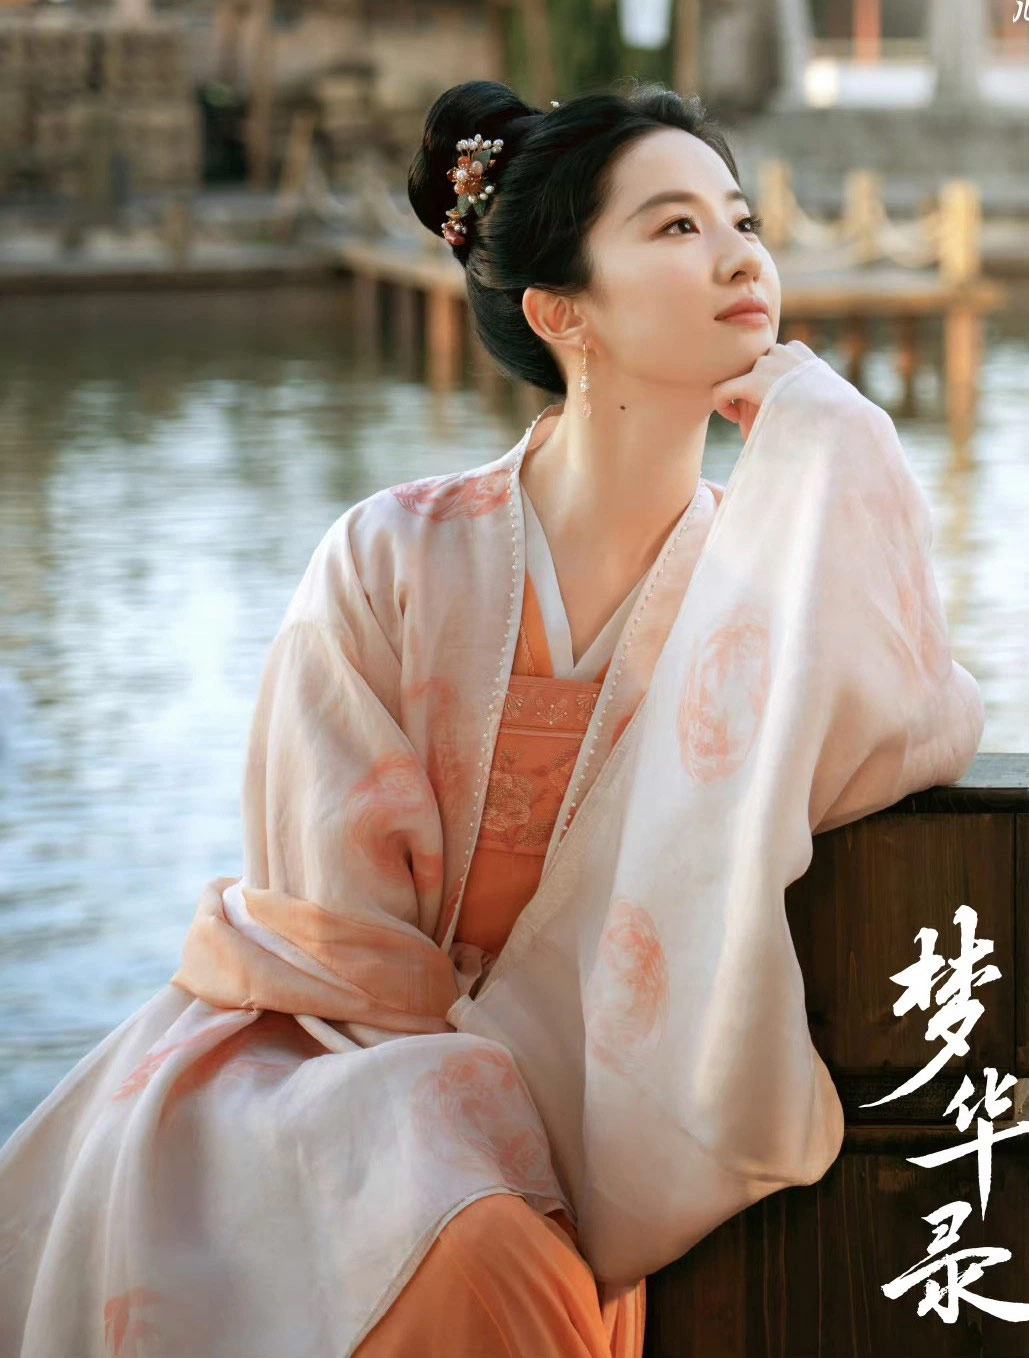 Hình ảnh mới của Lưu Diệc Phi trong phim "Mộng hoa lục".